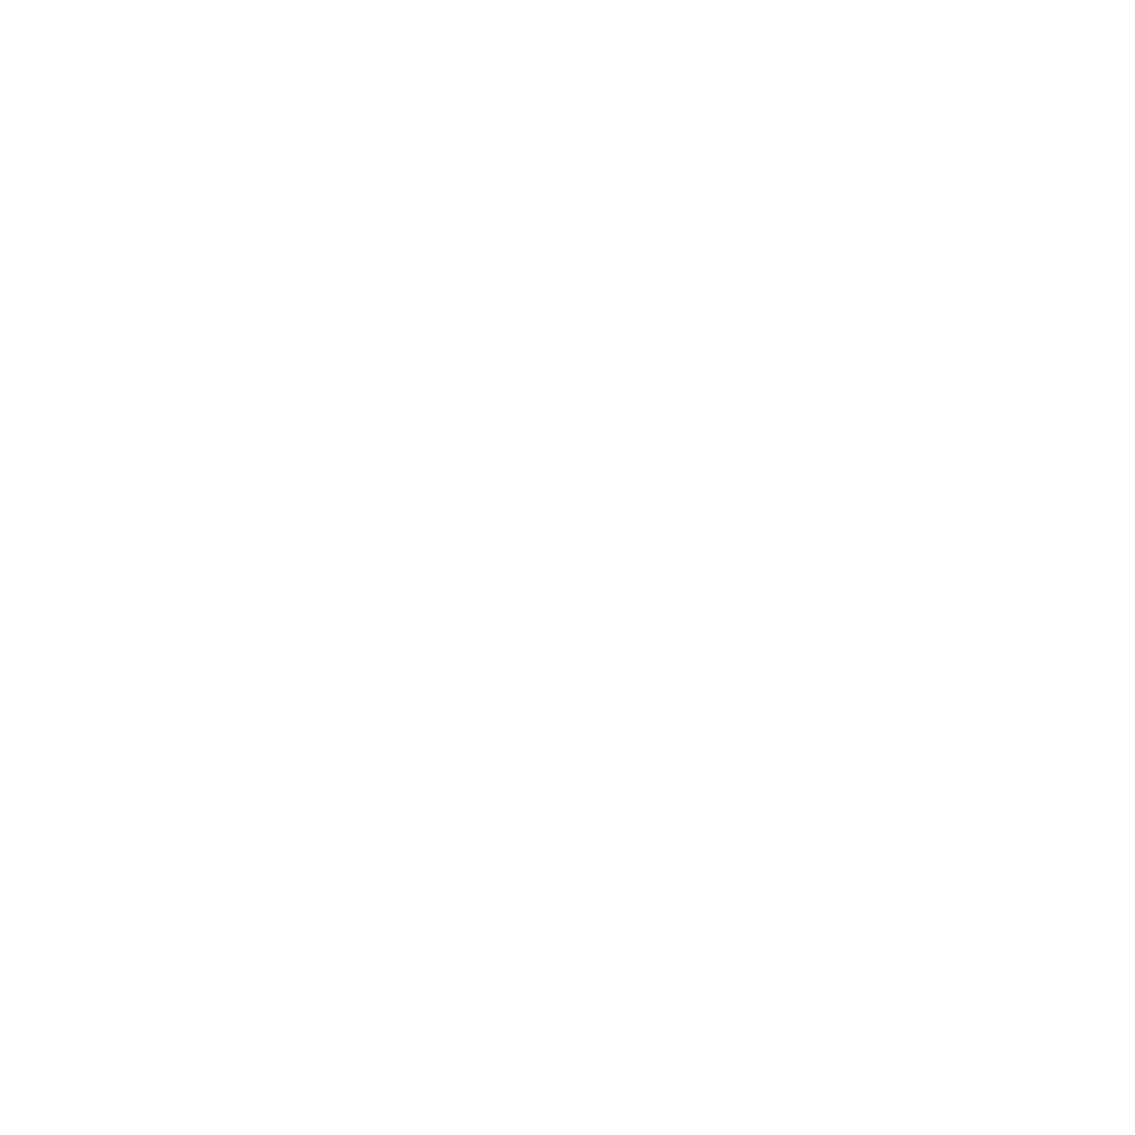 HEVA V2